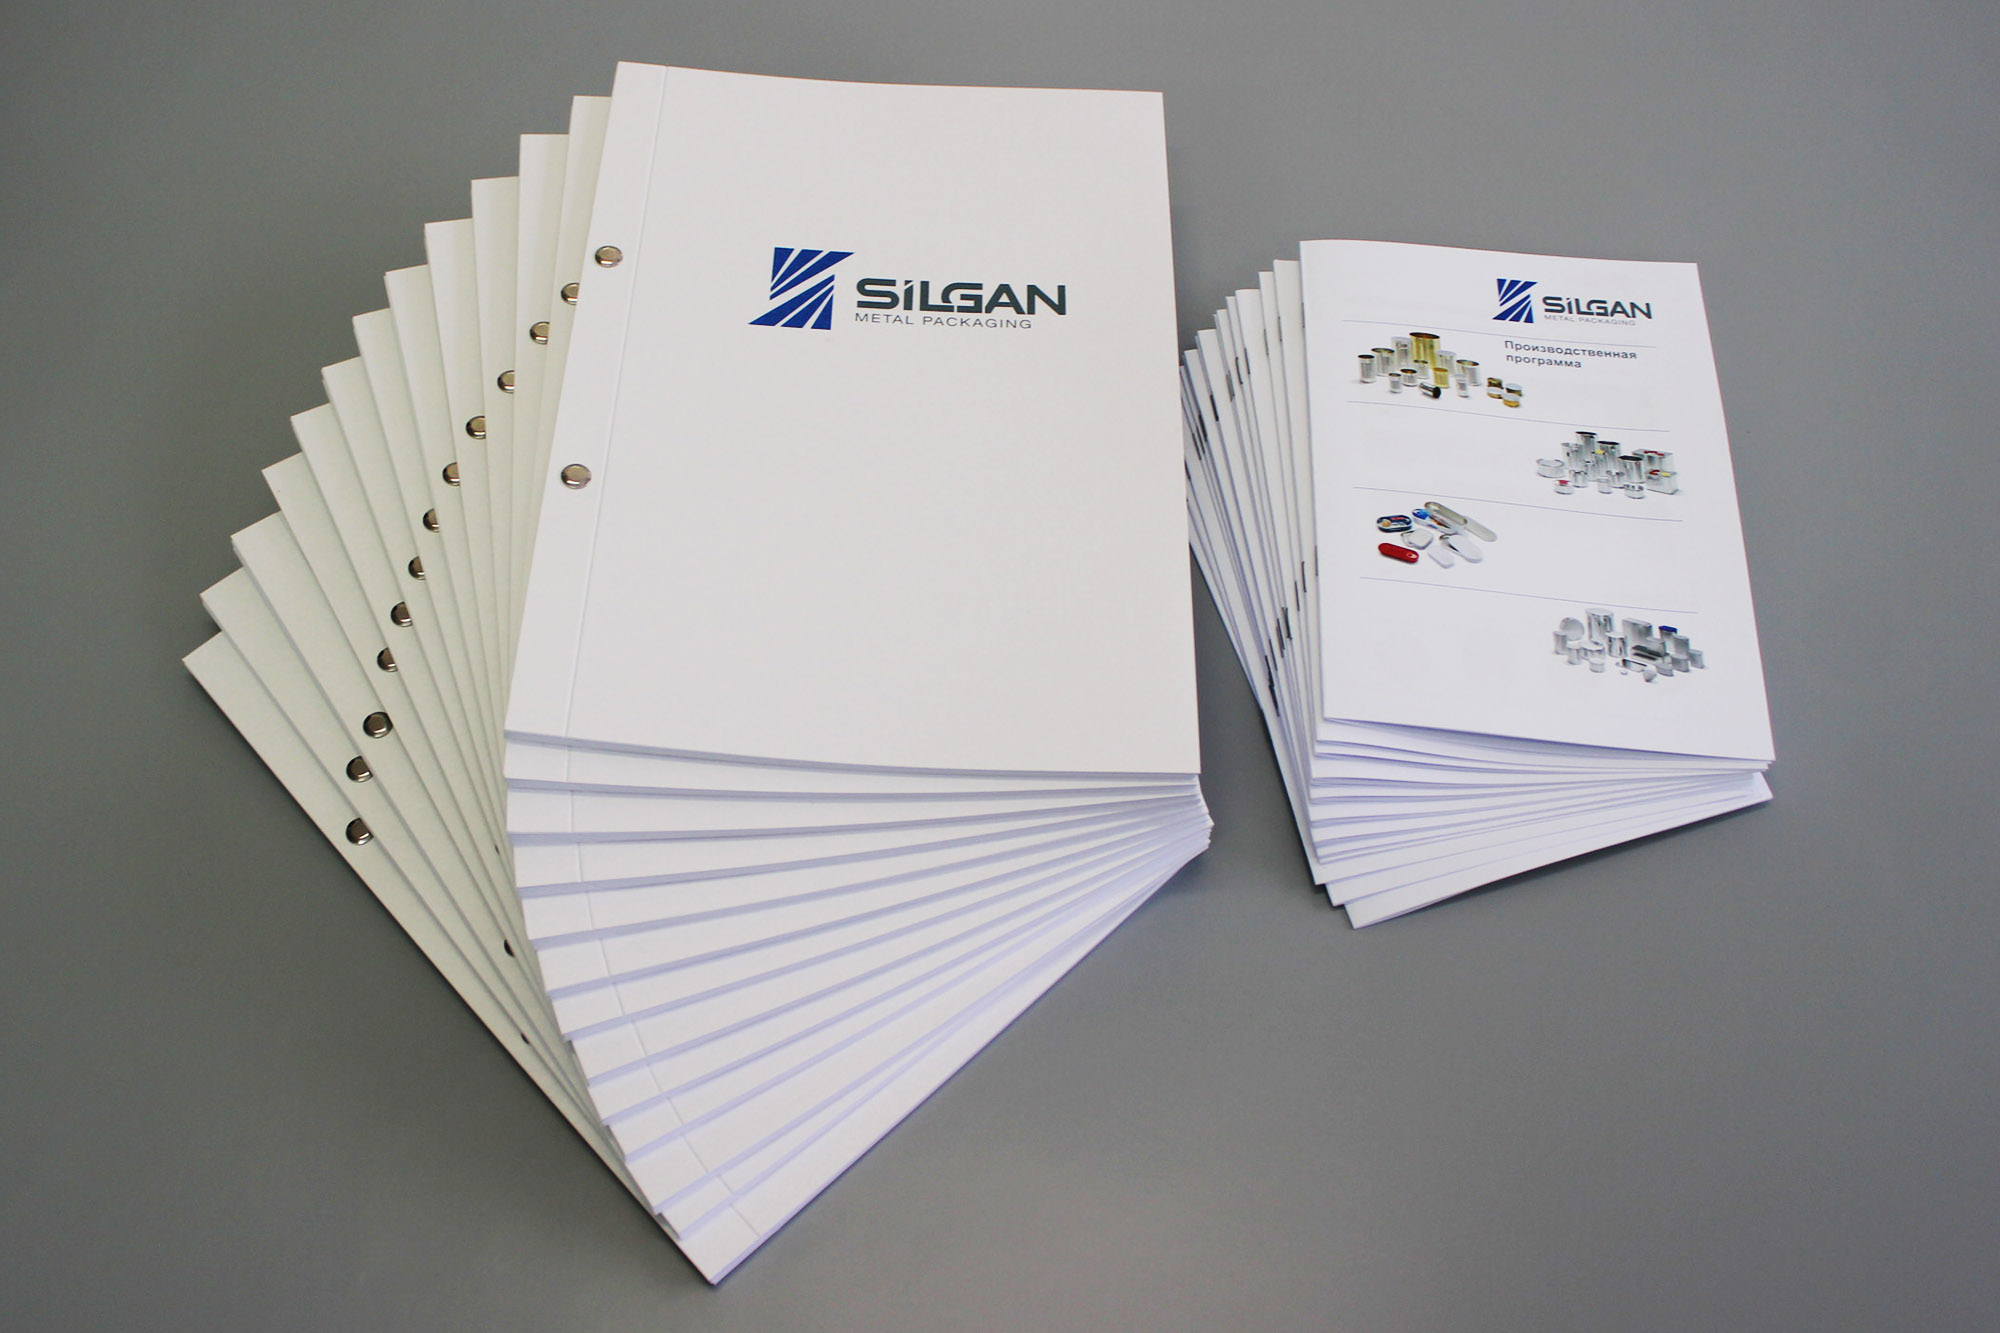 Комплект каталогов для выставки Silgan